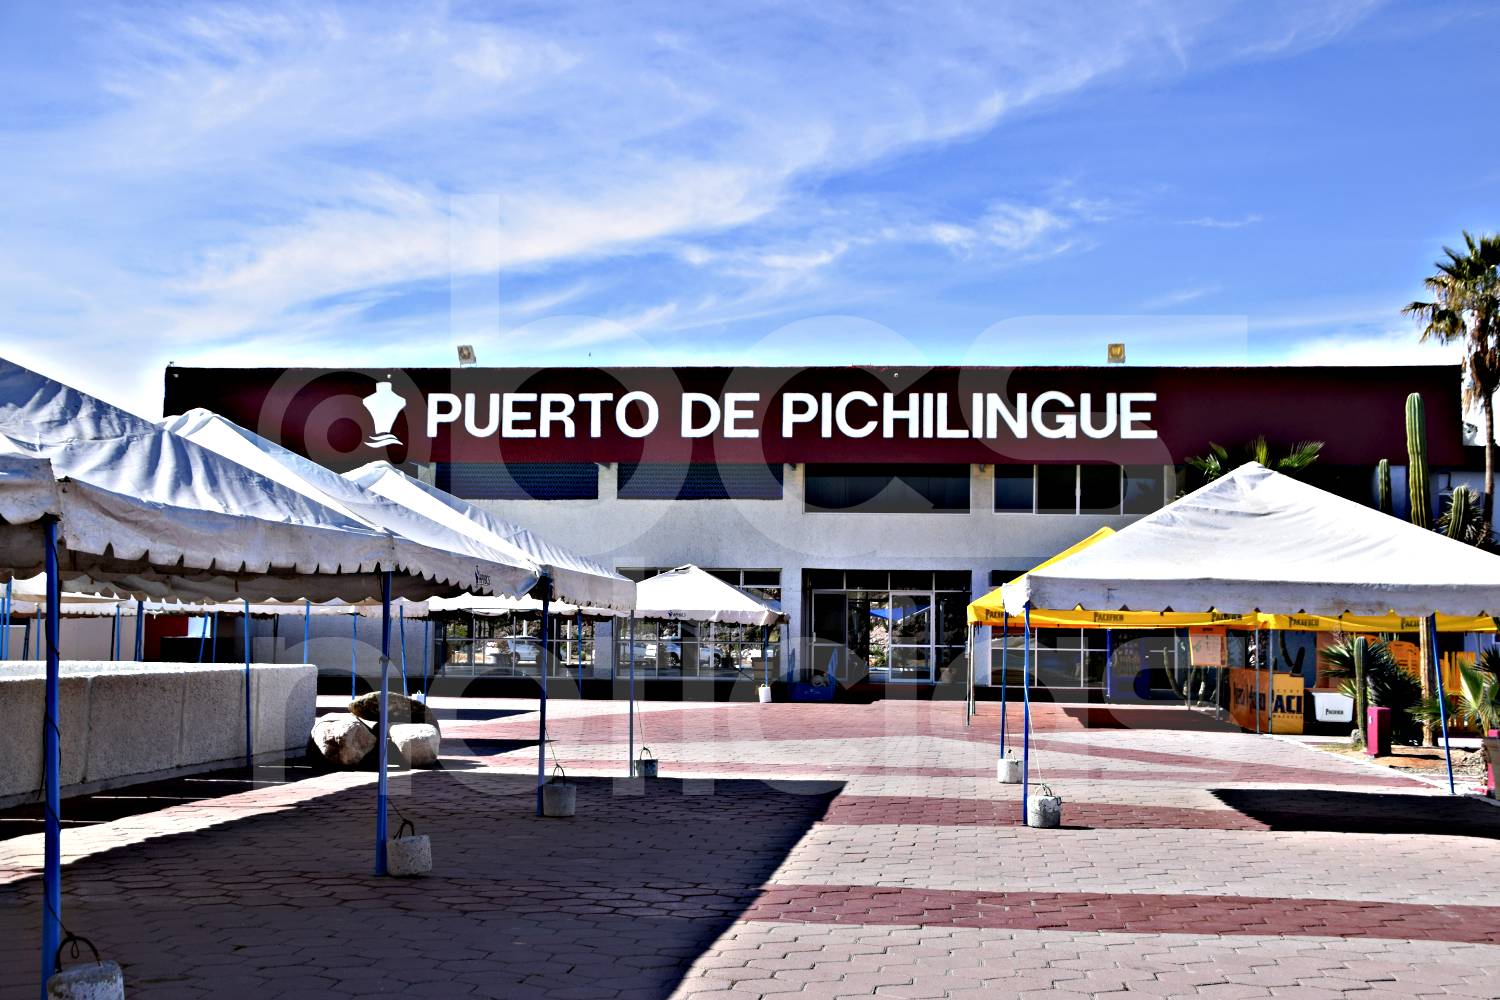 API obtiene autorización para reordenamiento y modernización de Puerto Pichilingue